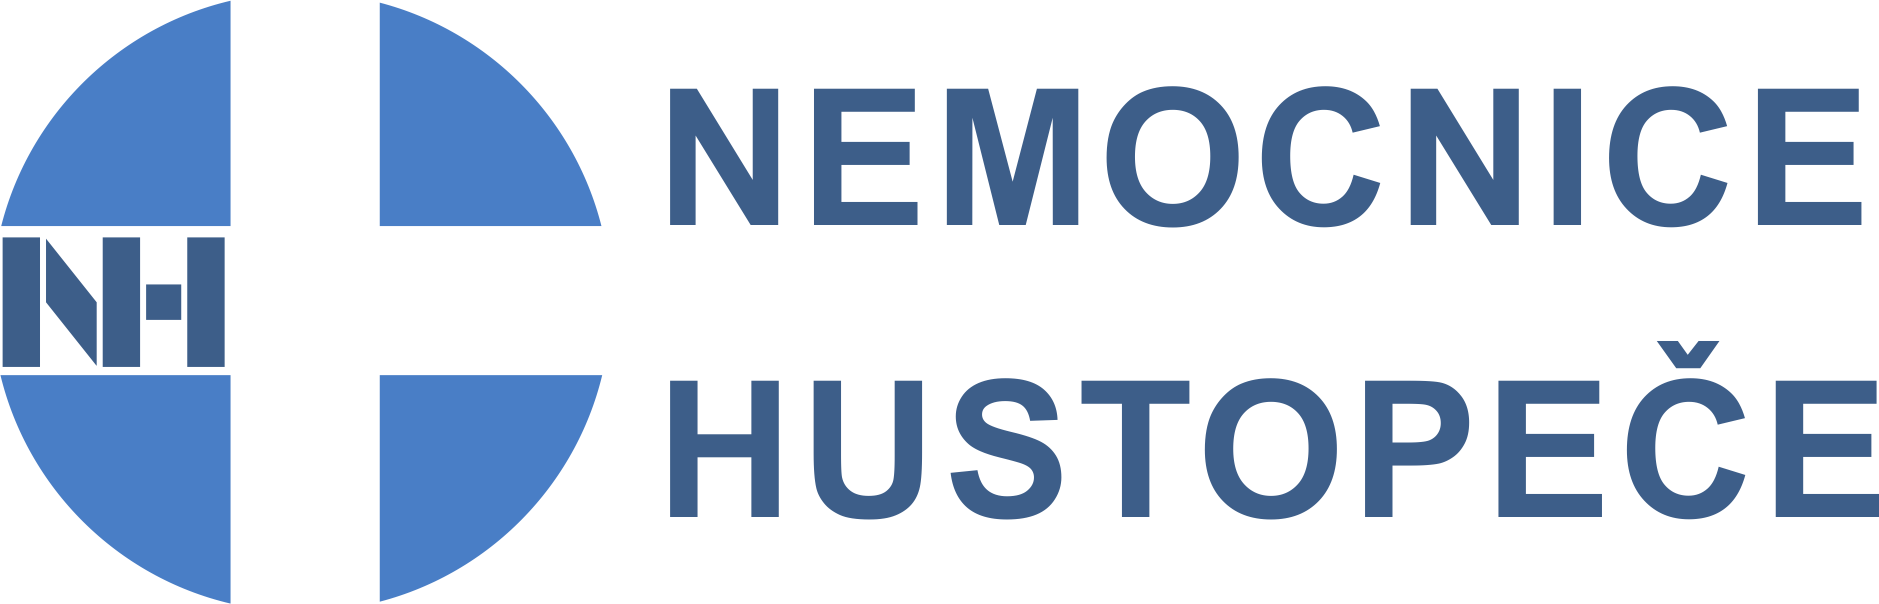 Logo - Nemocnice Hustopeče